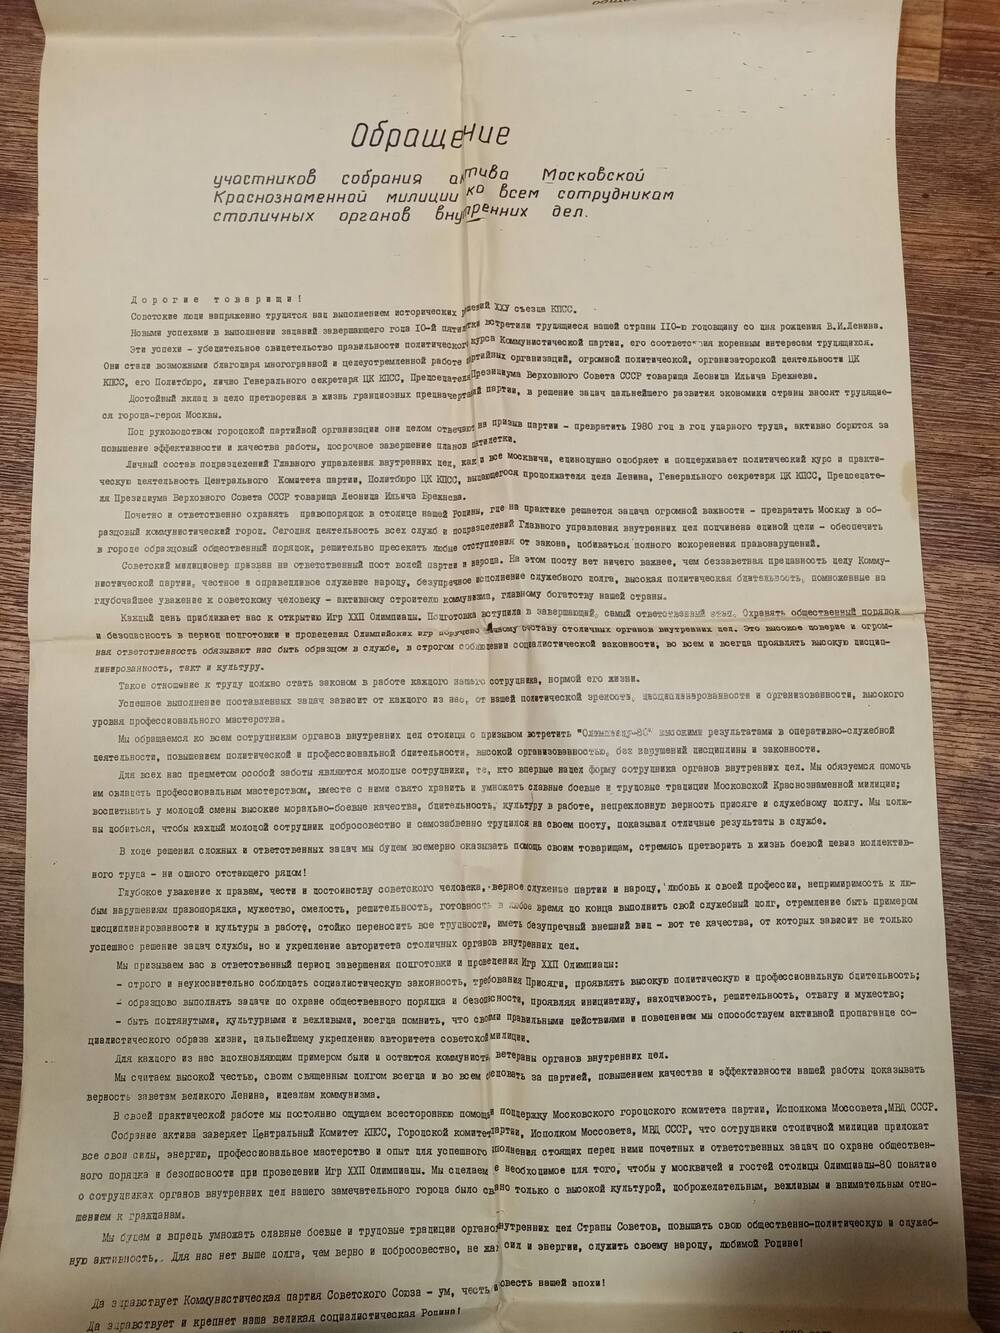 Обращение участников собрания актива Московской Краснознаменной милиции ко всем сотрудникам столичных органов внутренних дел. Принято на собрании актива 12 июня 1980 года.